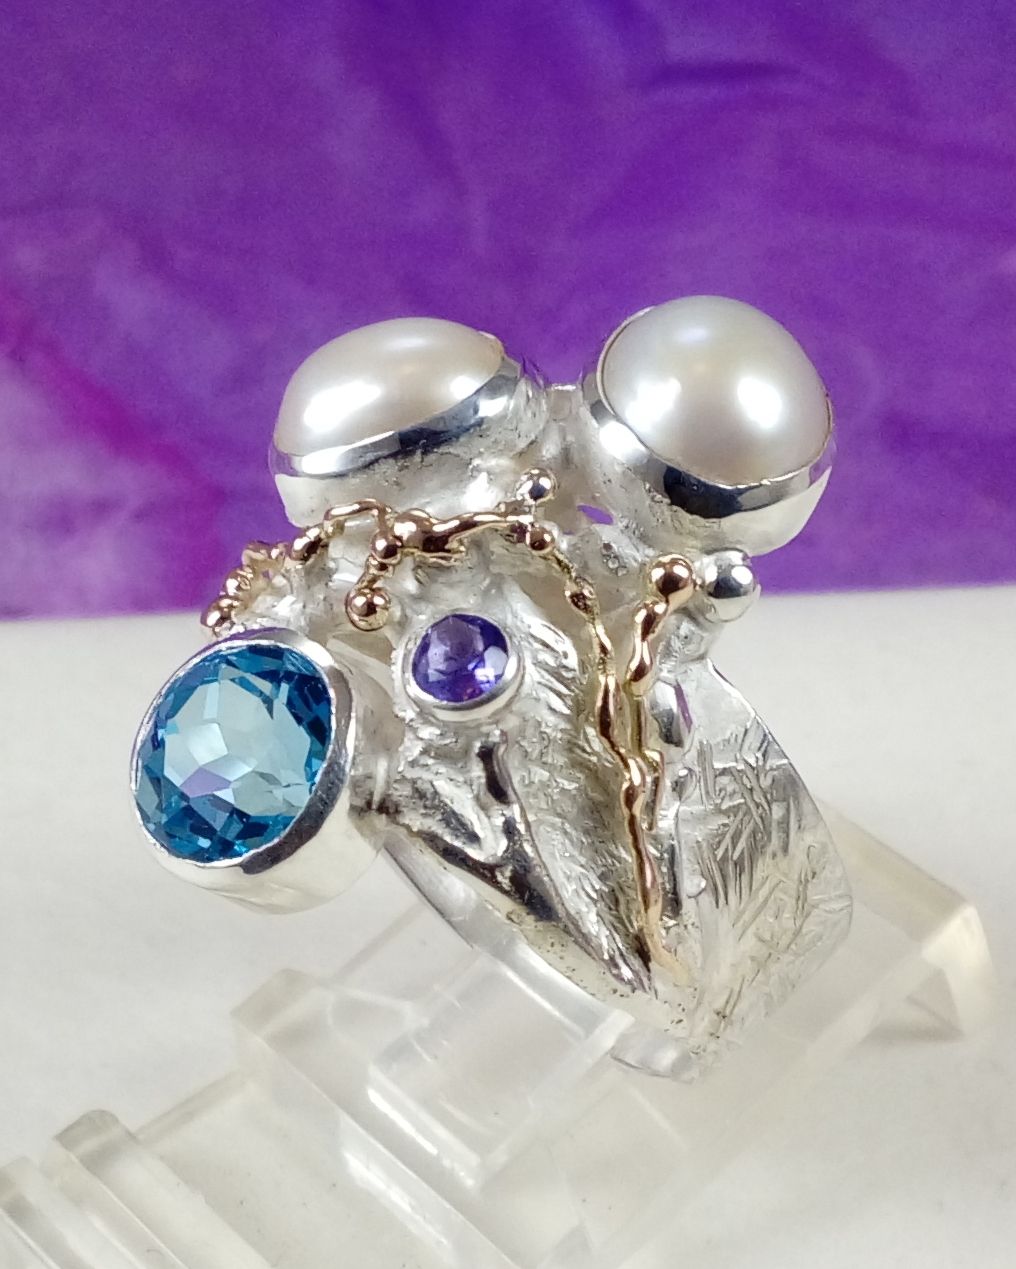 Gregory Pyra Piro ručně vyrobený prsten 7320, šperky prodávané v galeriích, prsten s jantarem a ametystem, prsten s ametystem a perlou, prsten s perlou a modrým topazem